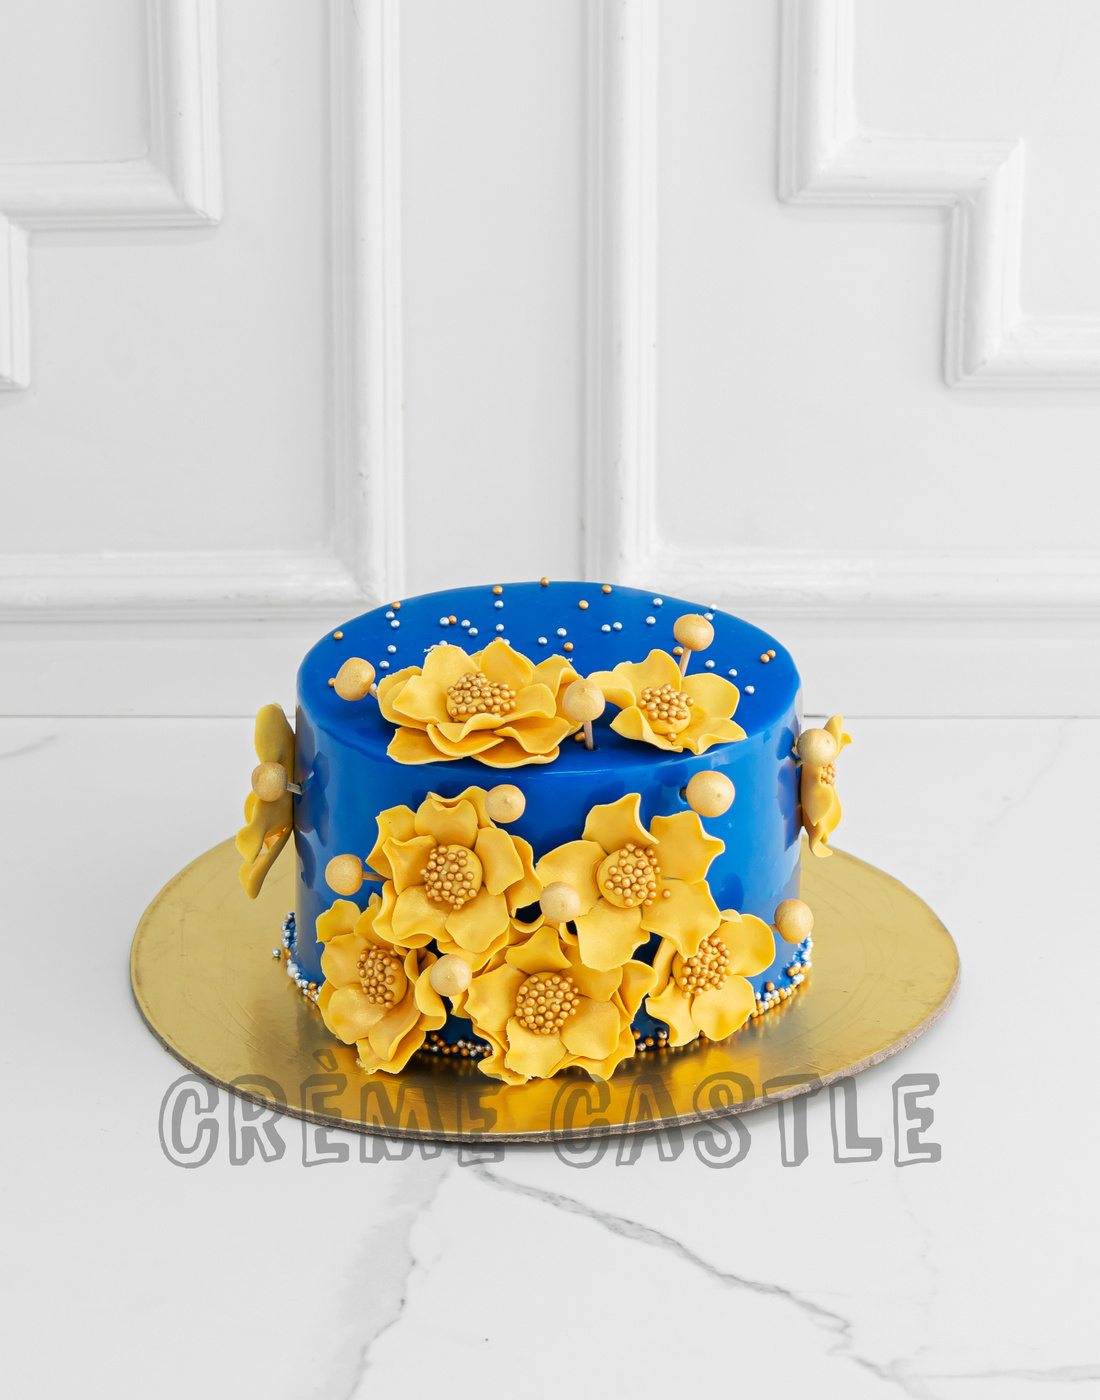 Engagement Theme Cake - Royal blue and Gold Theme Cake - Customized Cake In Gurgaon